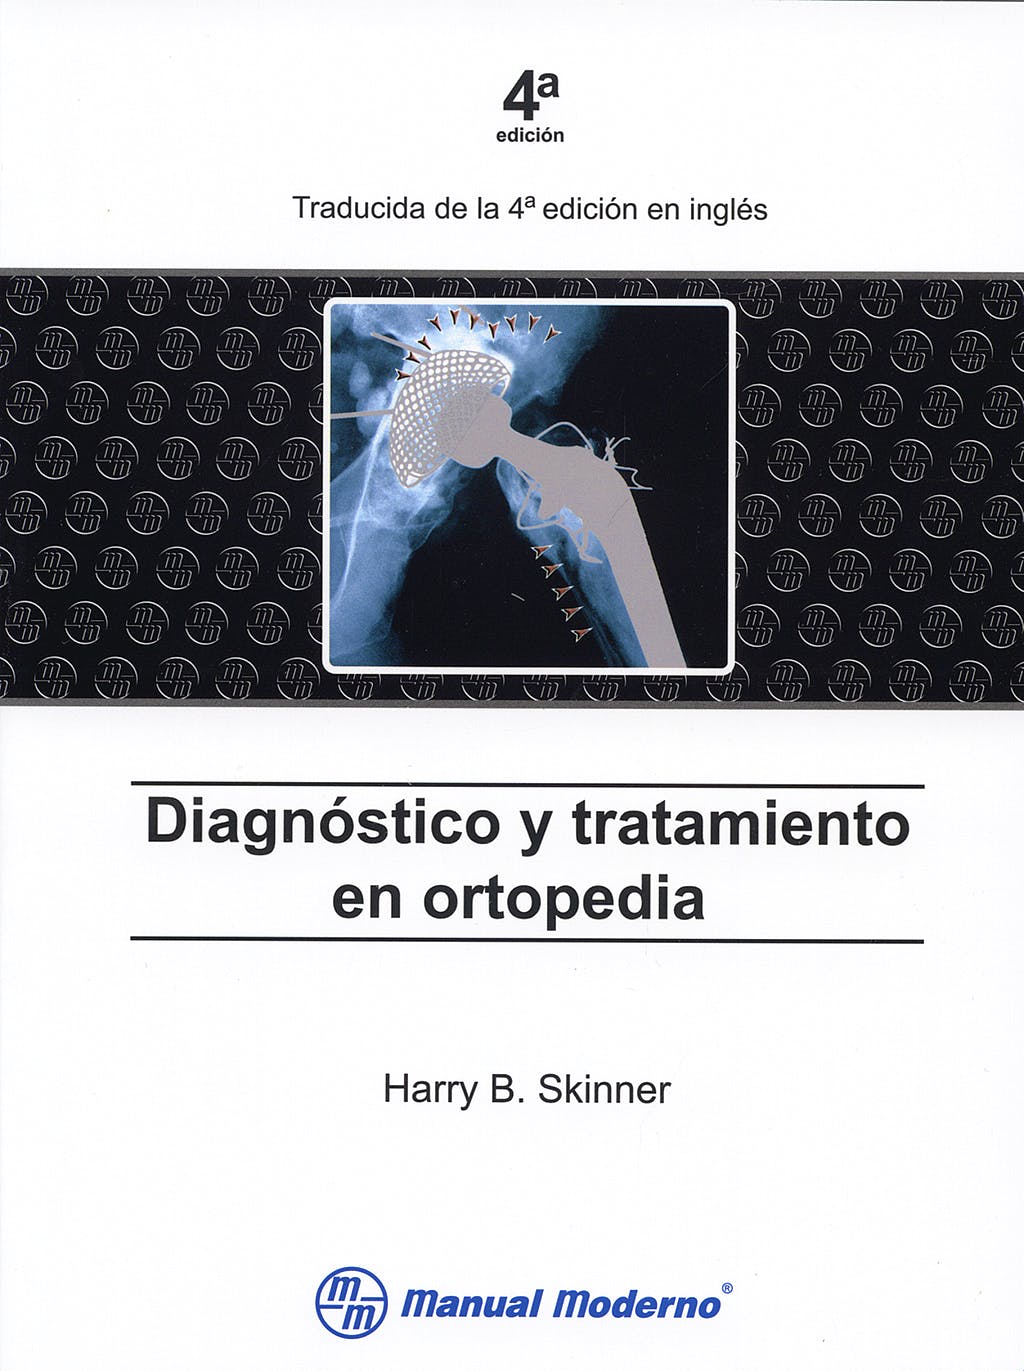 diagnostico y tratamiento en ortopedia skinner pdf reader